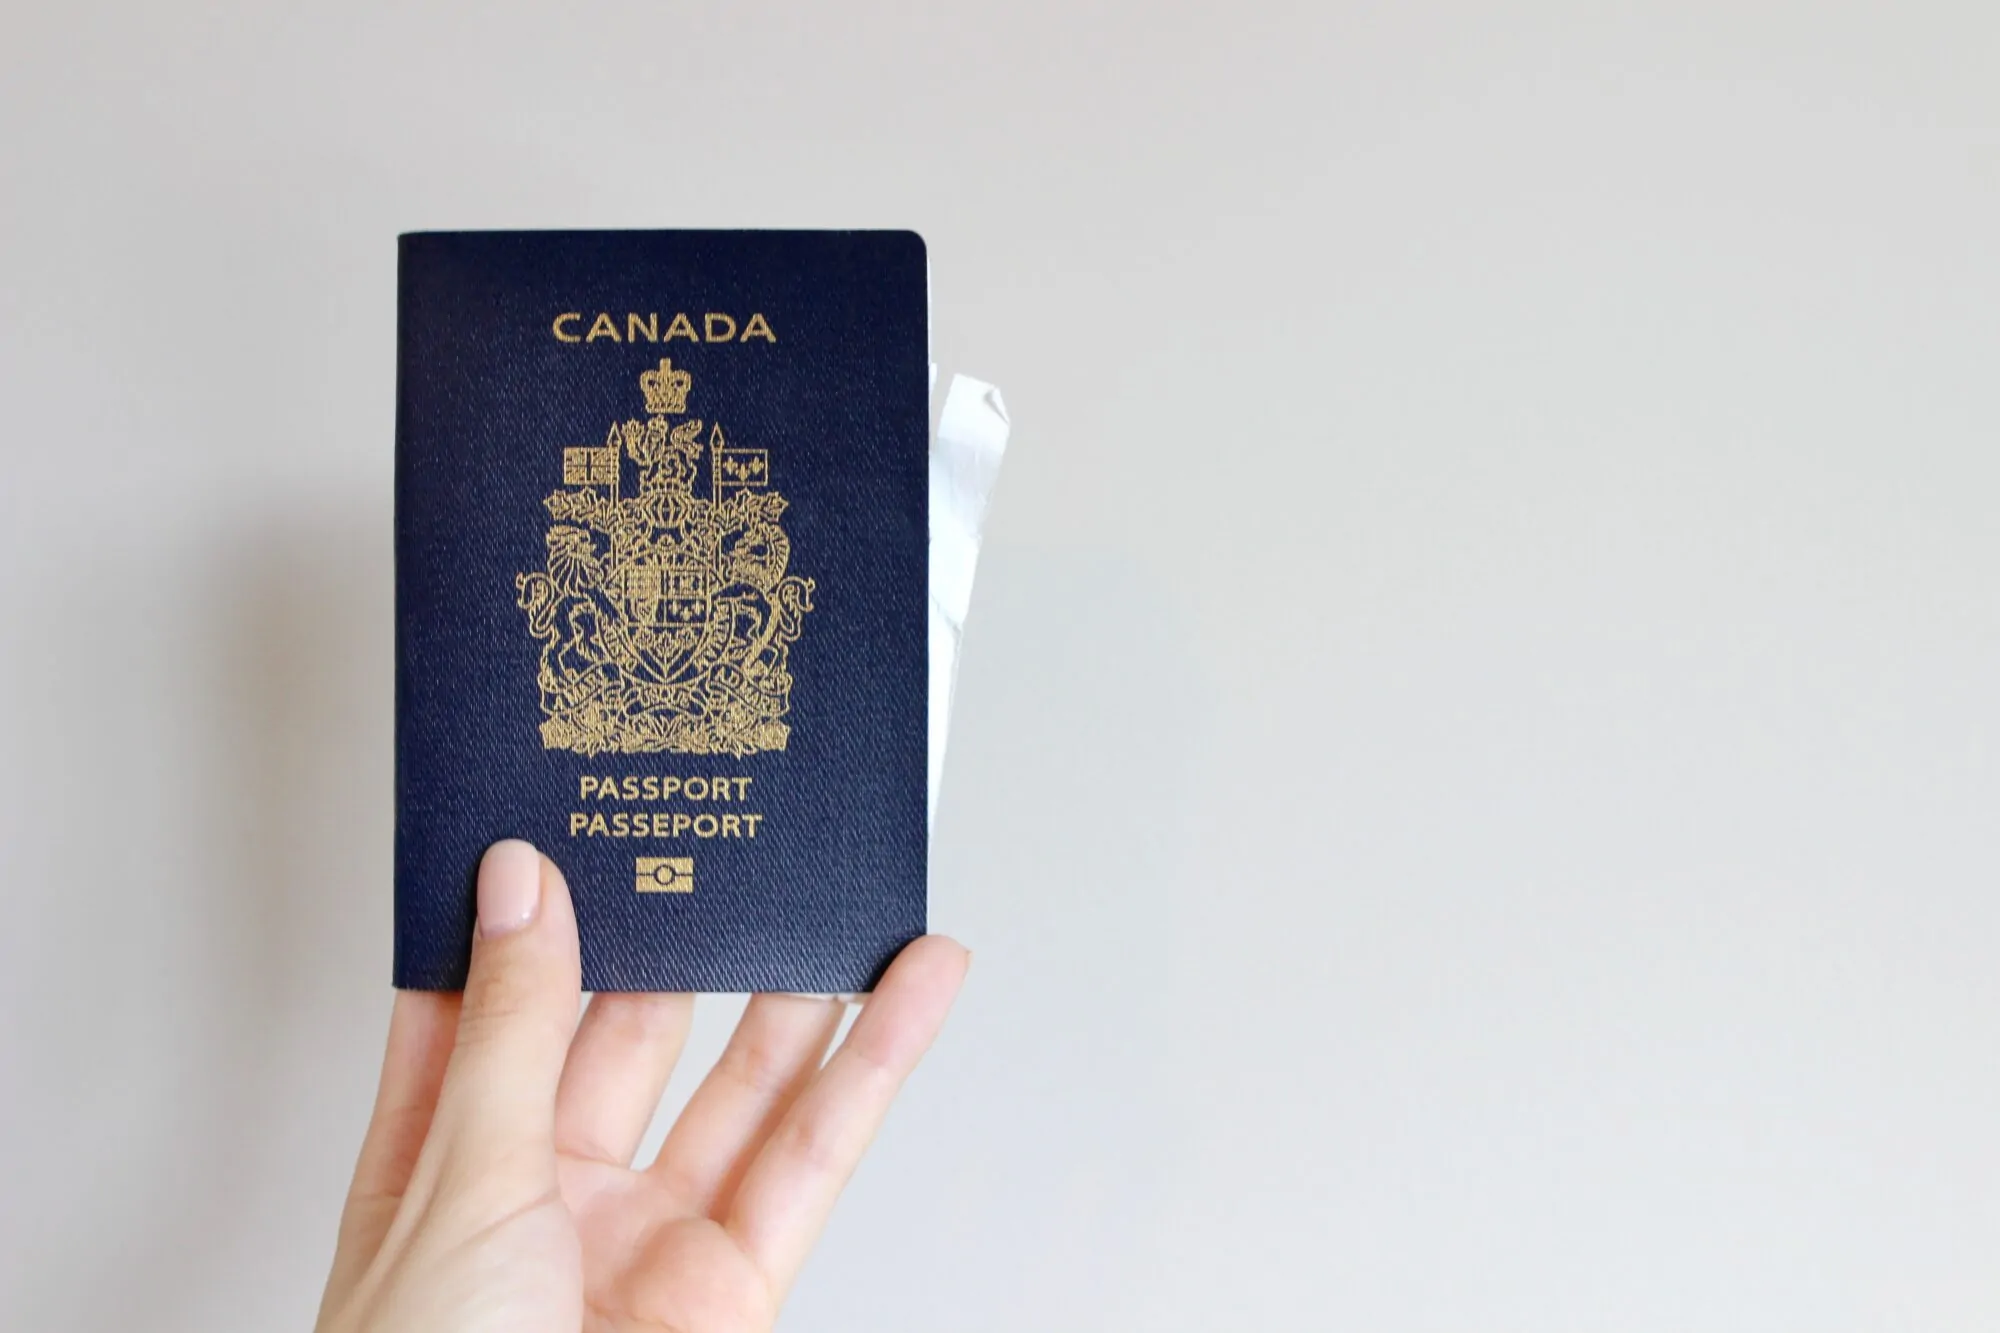 Passeport canada